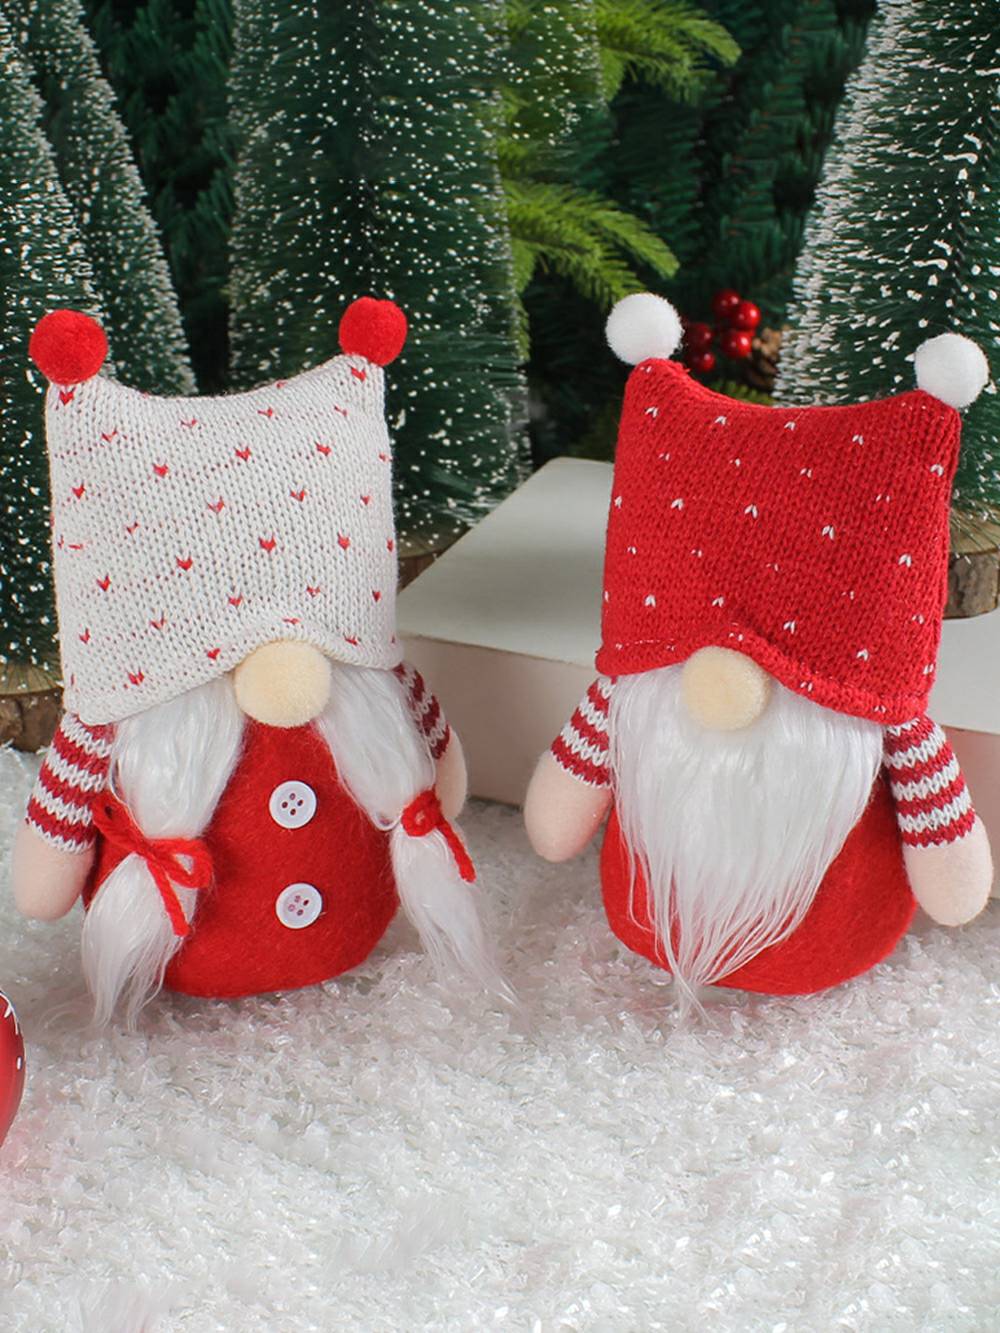 Entzückendes Weihnachts-Plüsch-Elfenpaar mit Strickmütze, Rudolph-Puppen